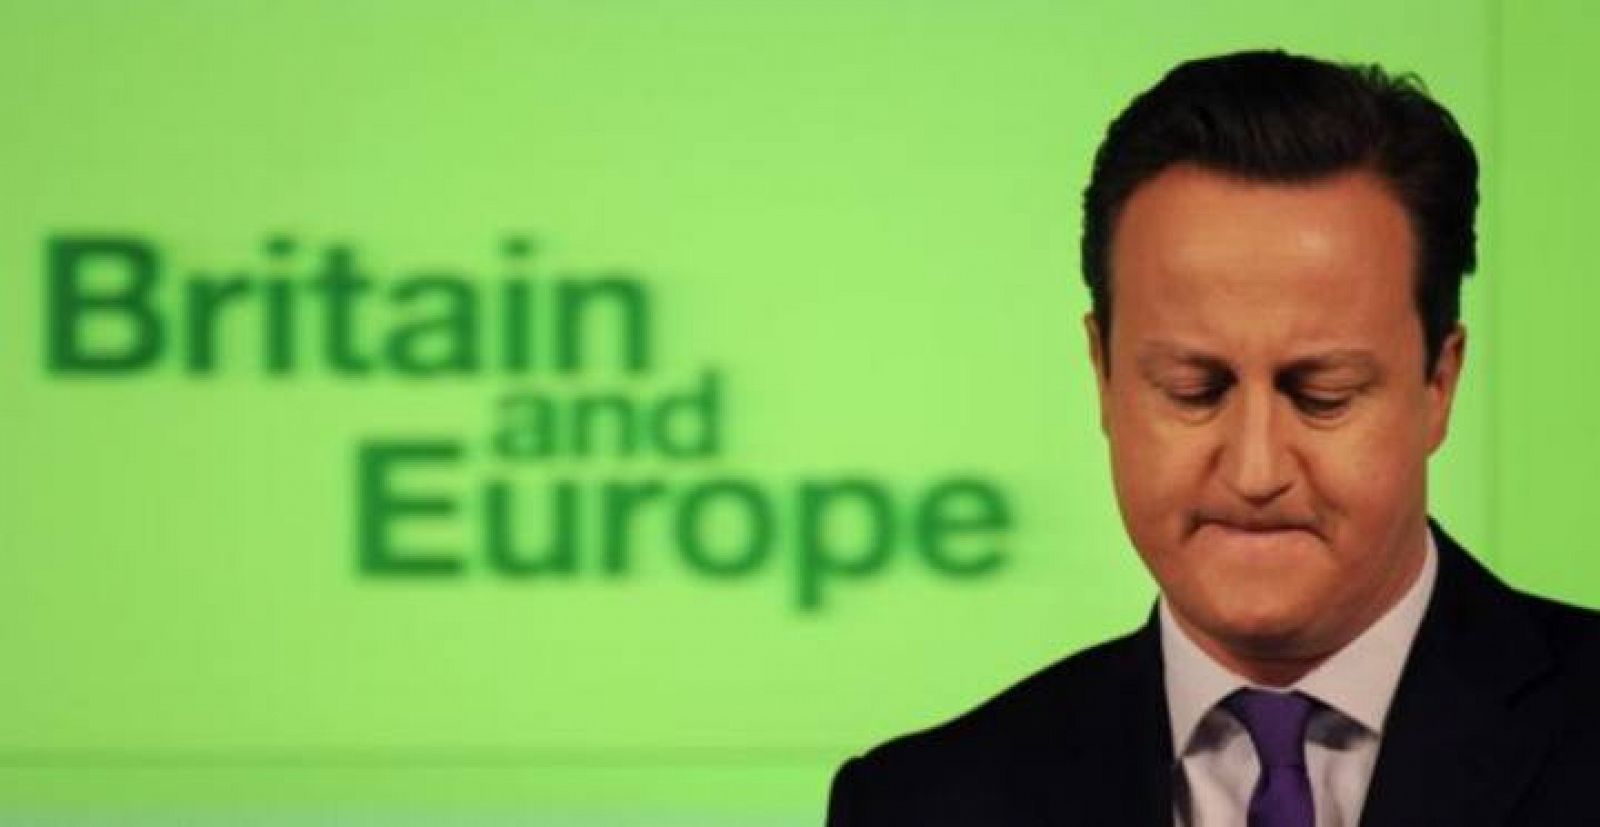 David Cameron ha hecho una campaña feroz contra Jean-Claude Juncker que amenaza con distanciar a Reino Unido más de la Unión Europea.